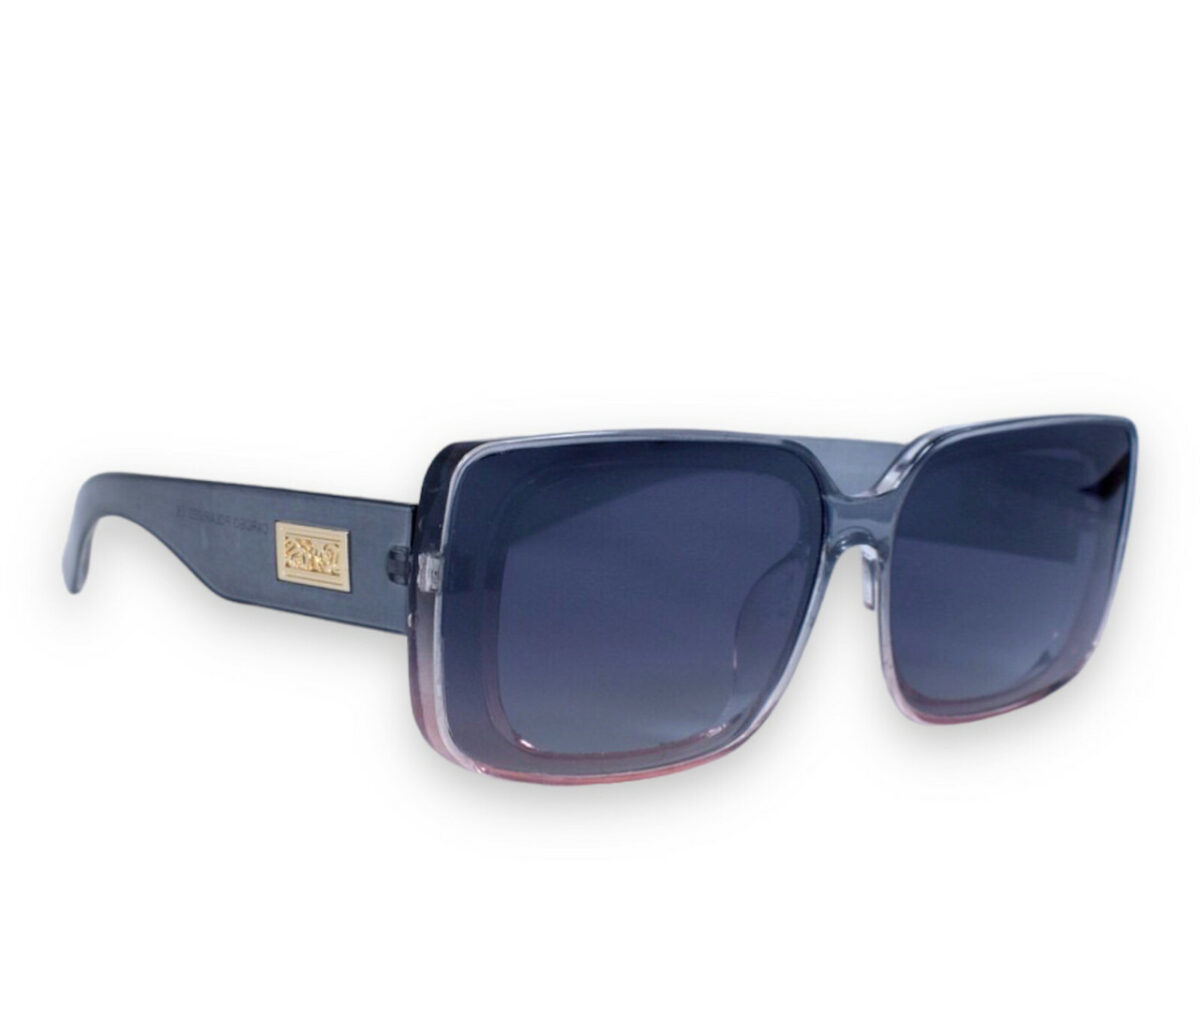 Жіночі сонцезахисні окуляри polarized P2904-4 topseason Cardeo